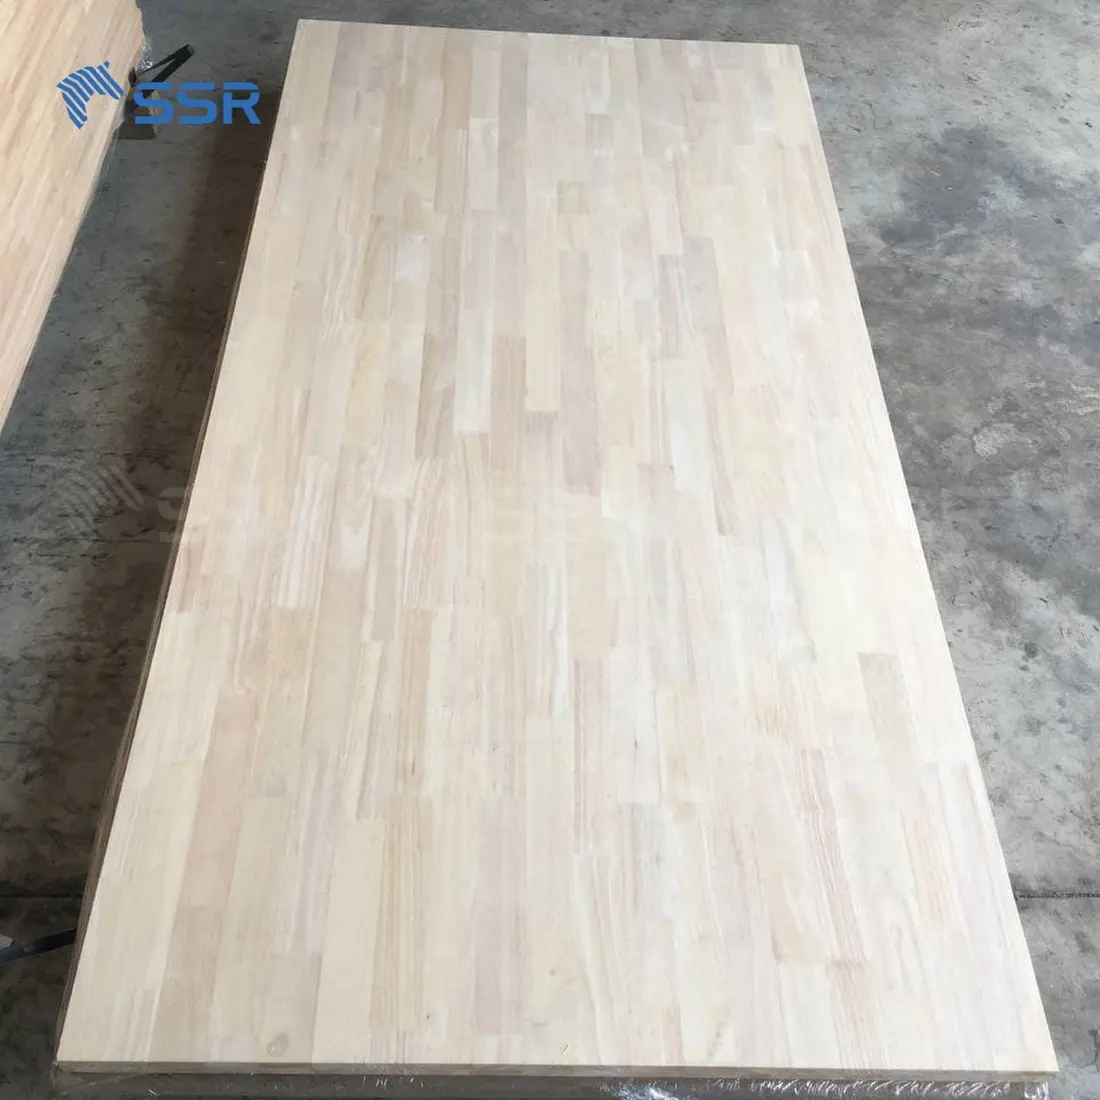 SSR VINA - Rubber Wood Finger Joint Board - rubberwood finger joint board rubber wood finger joint board